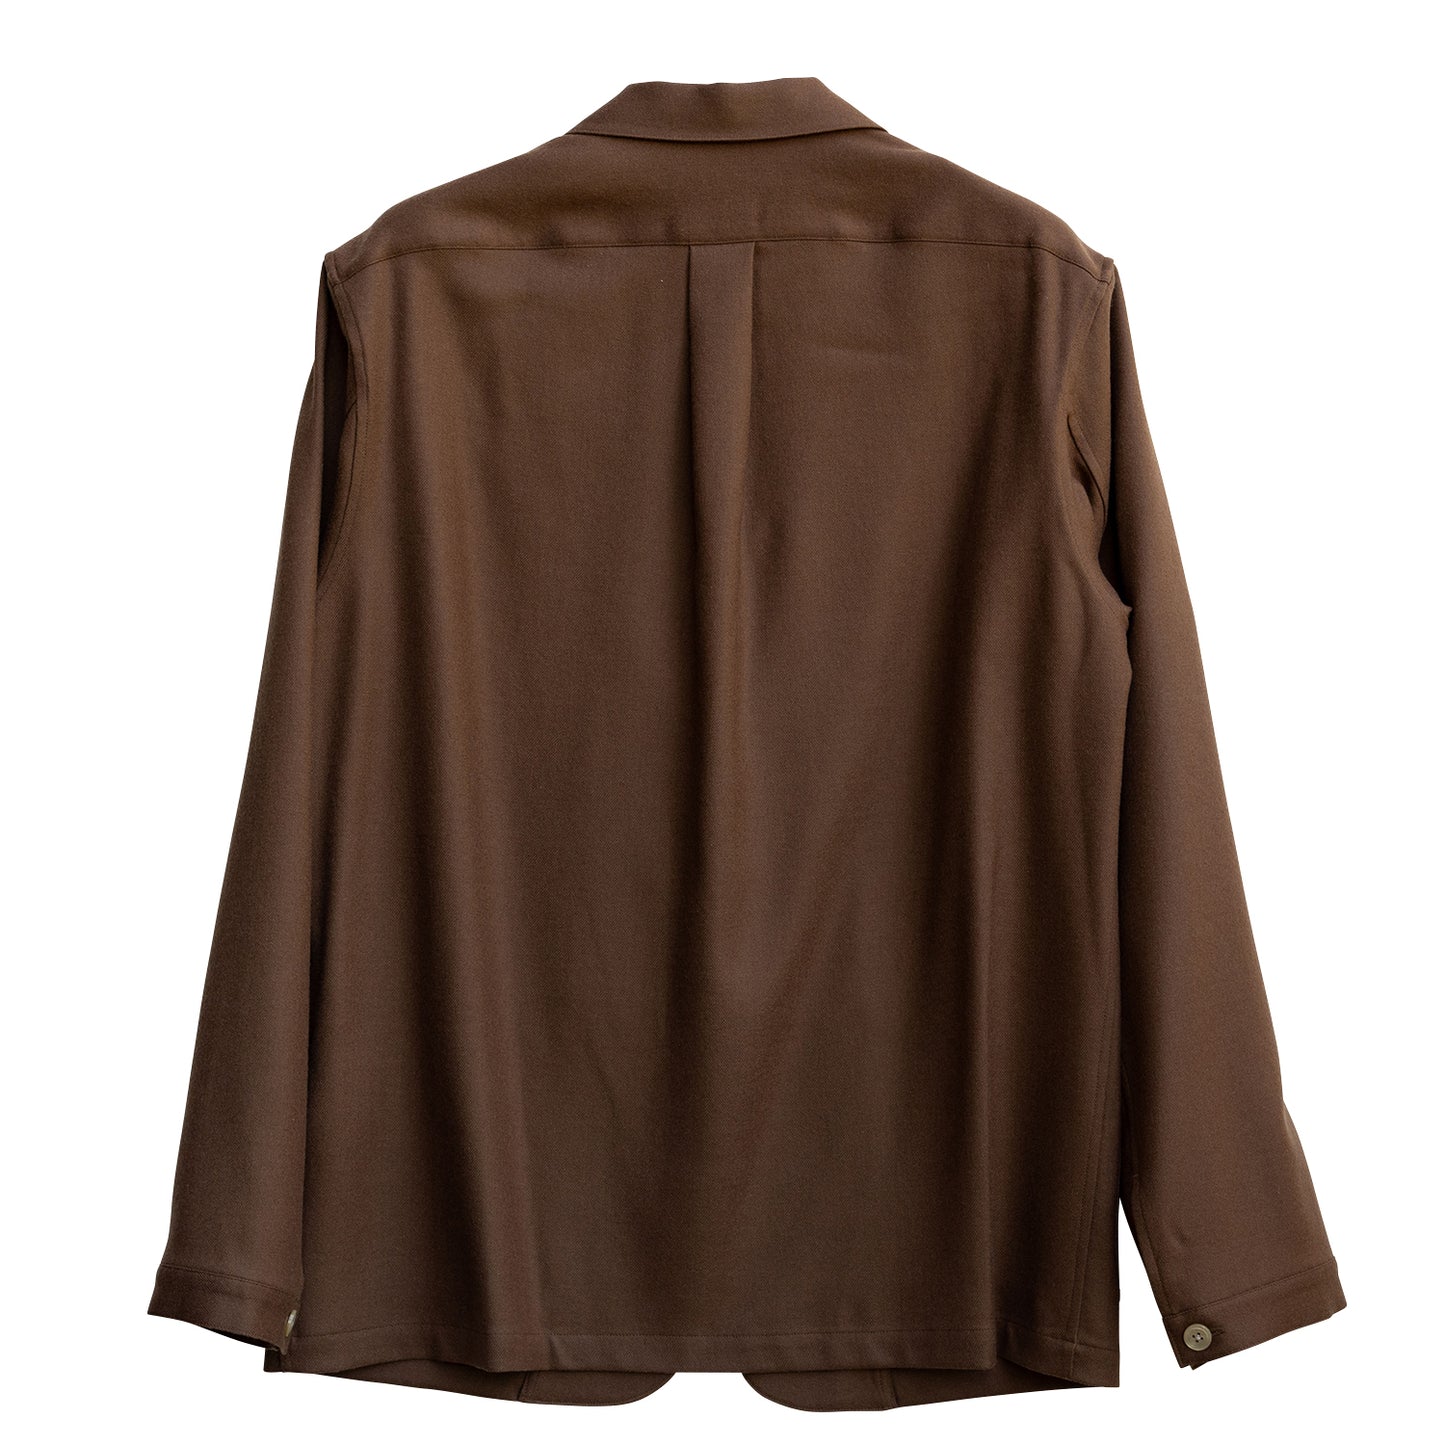 COLONY CLOTHING /  ライトウェイトフランネル シャツジャケット / CC2301-JK01S